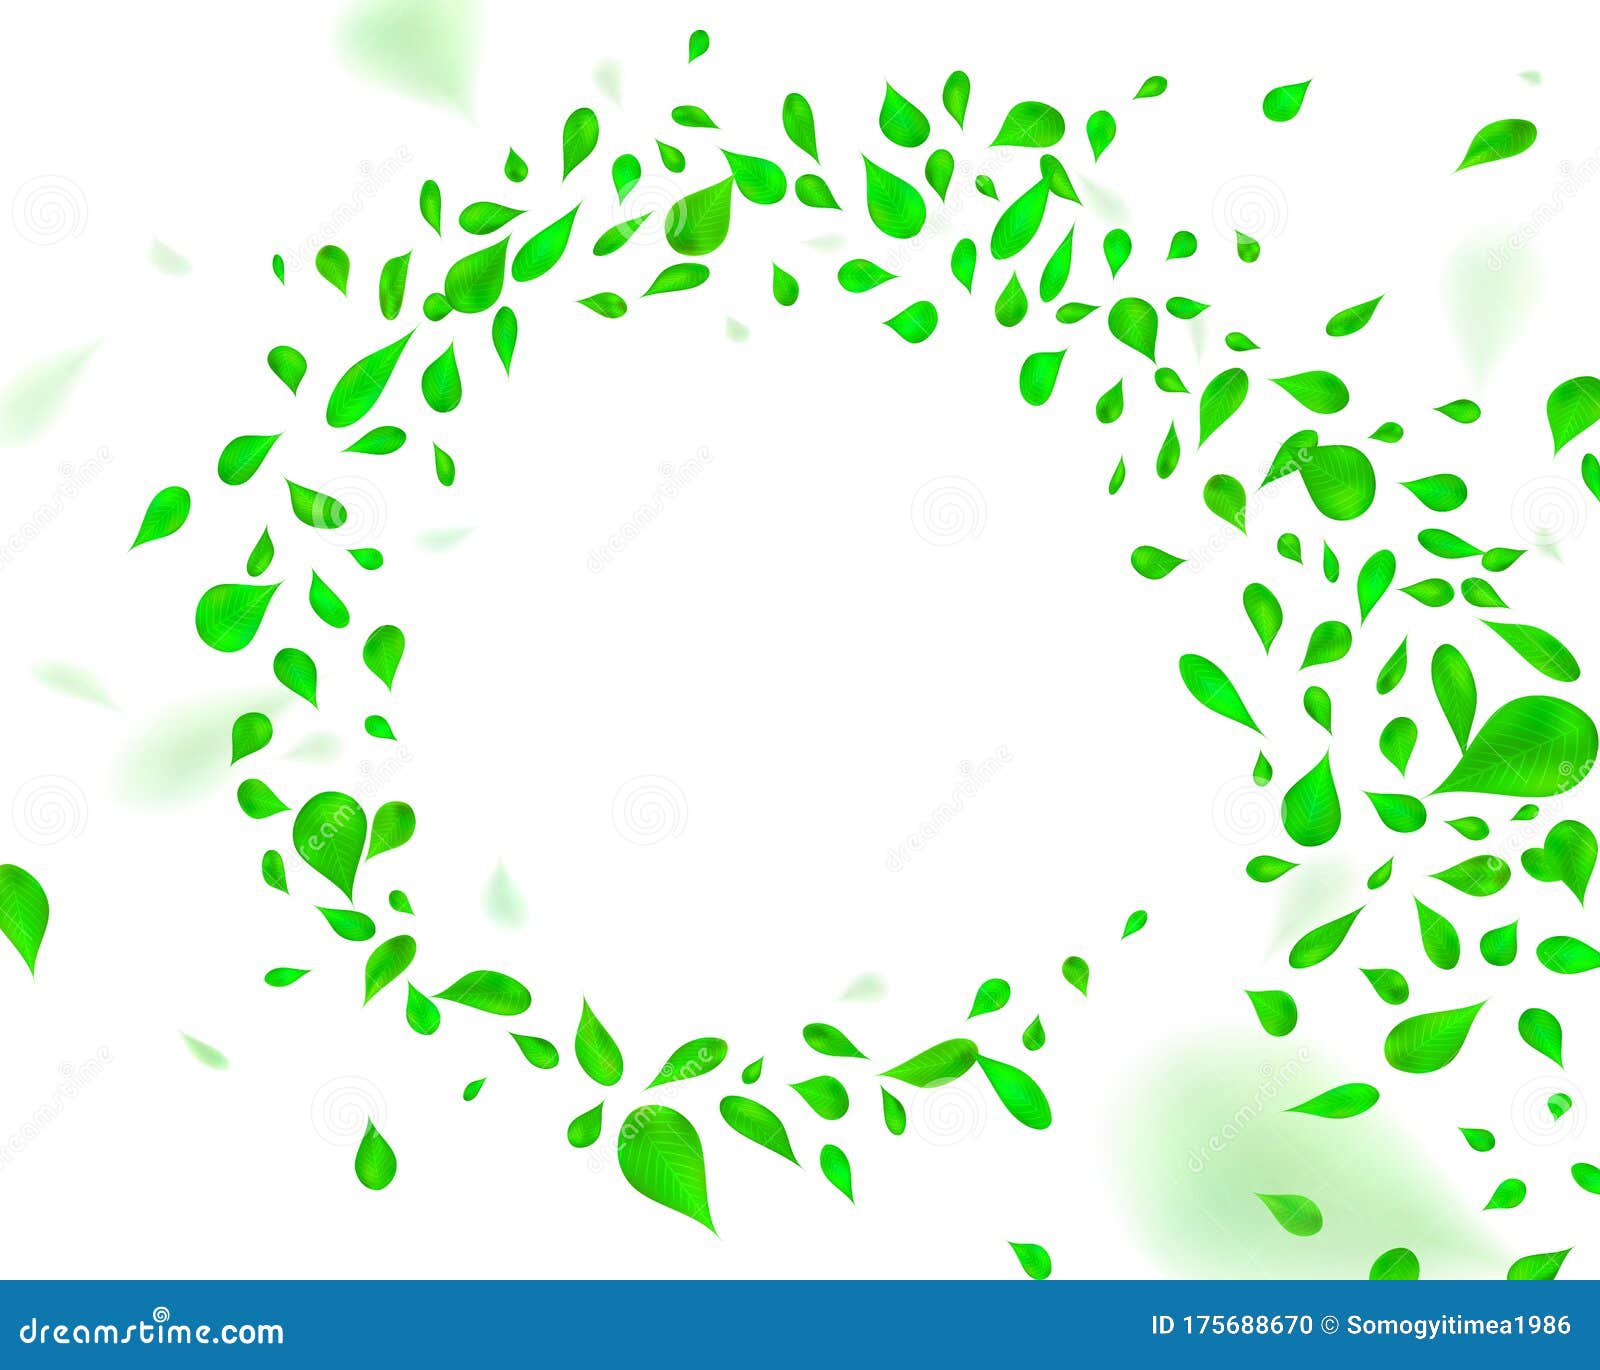 swirling green leafs in the wind.